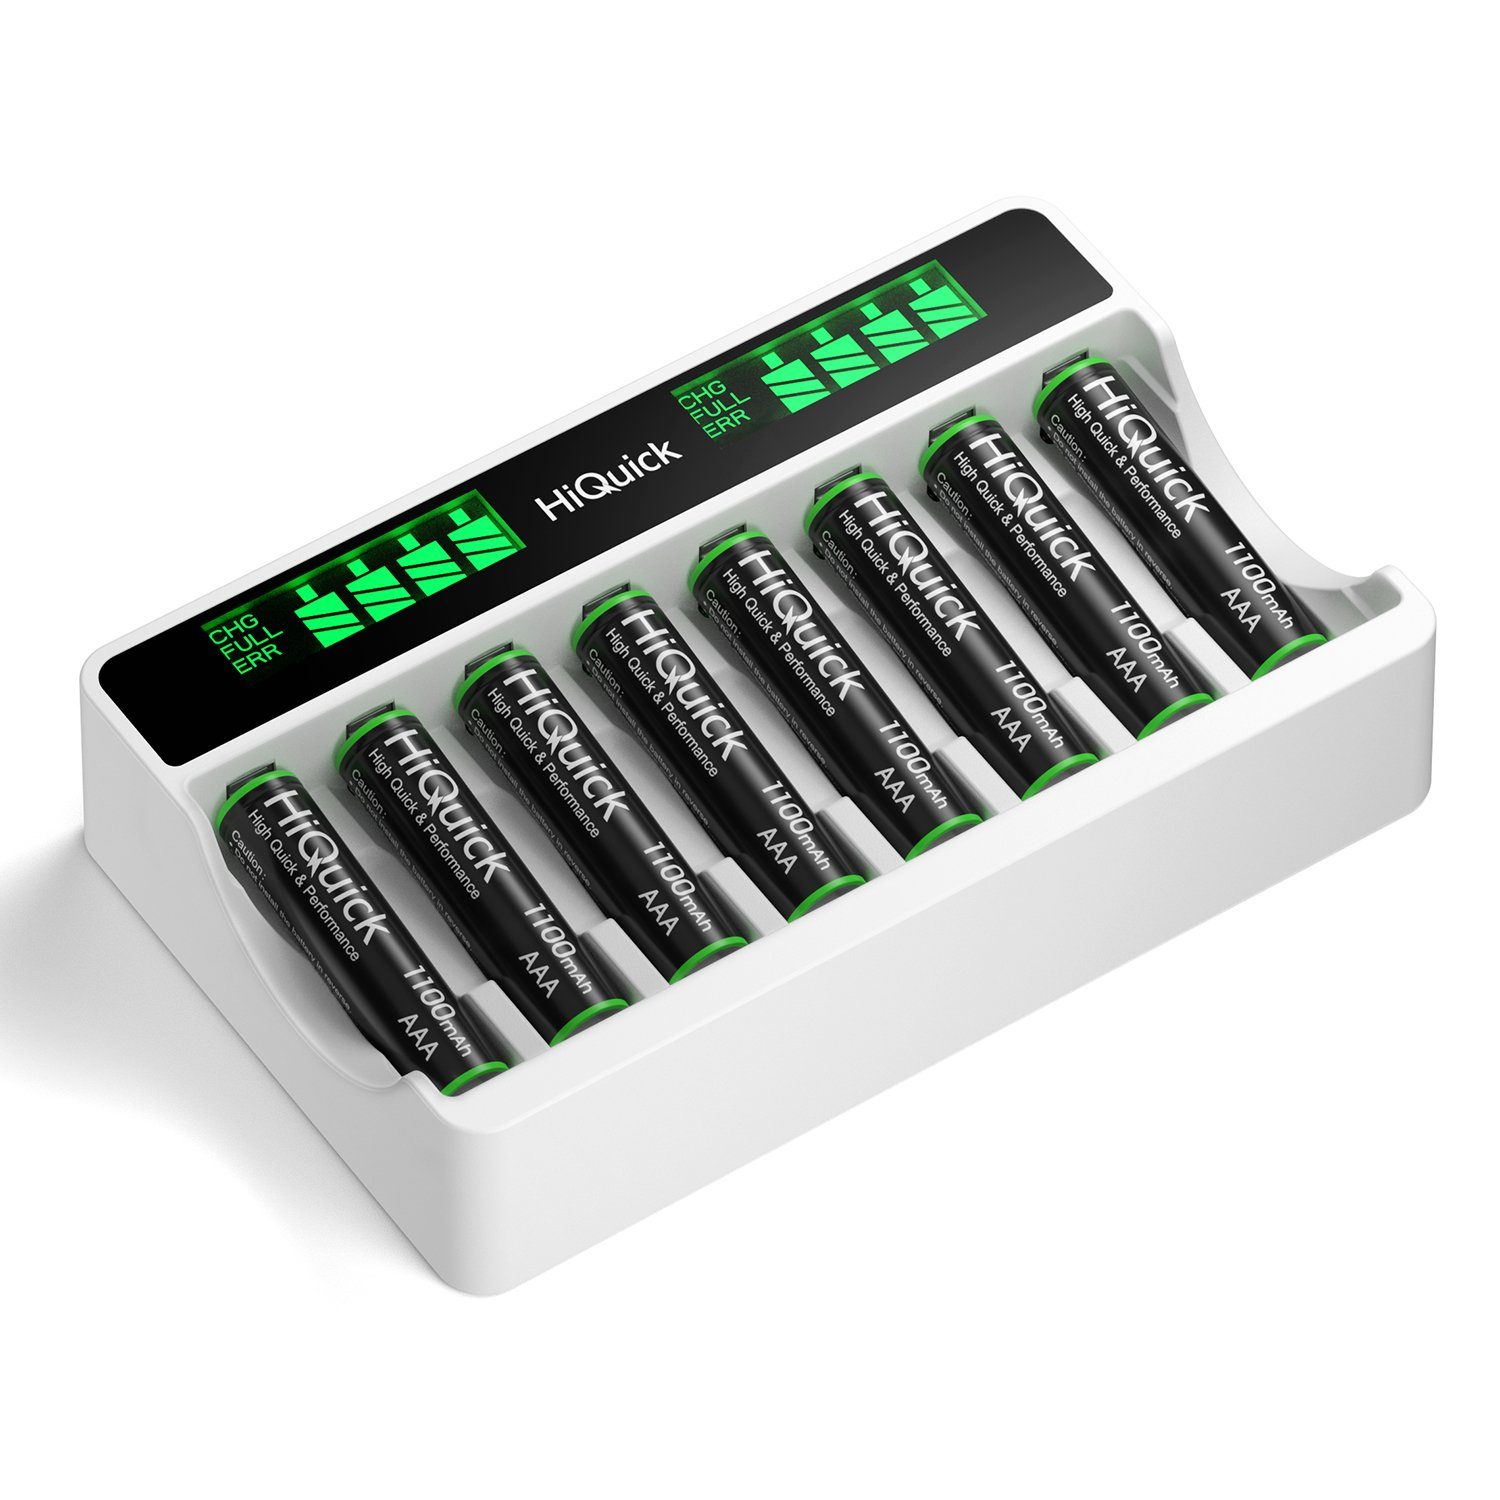 HiQuick Akku Ladegerät mit AAA Akku 8 Stück, für Mignon AA,Micro AAA  Batterien Batterie-Ladegerät